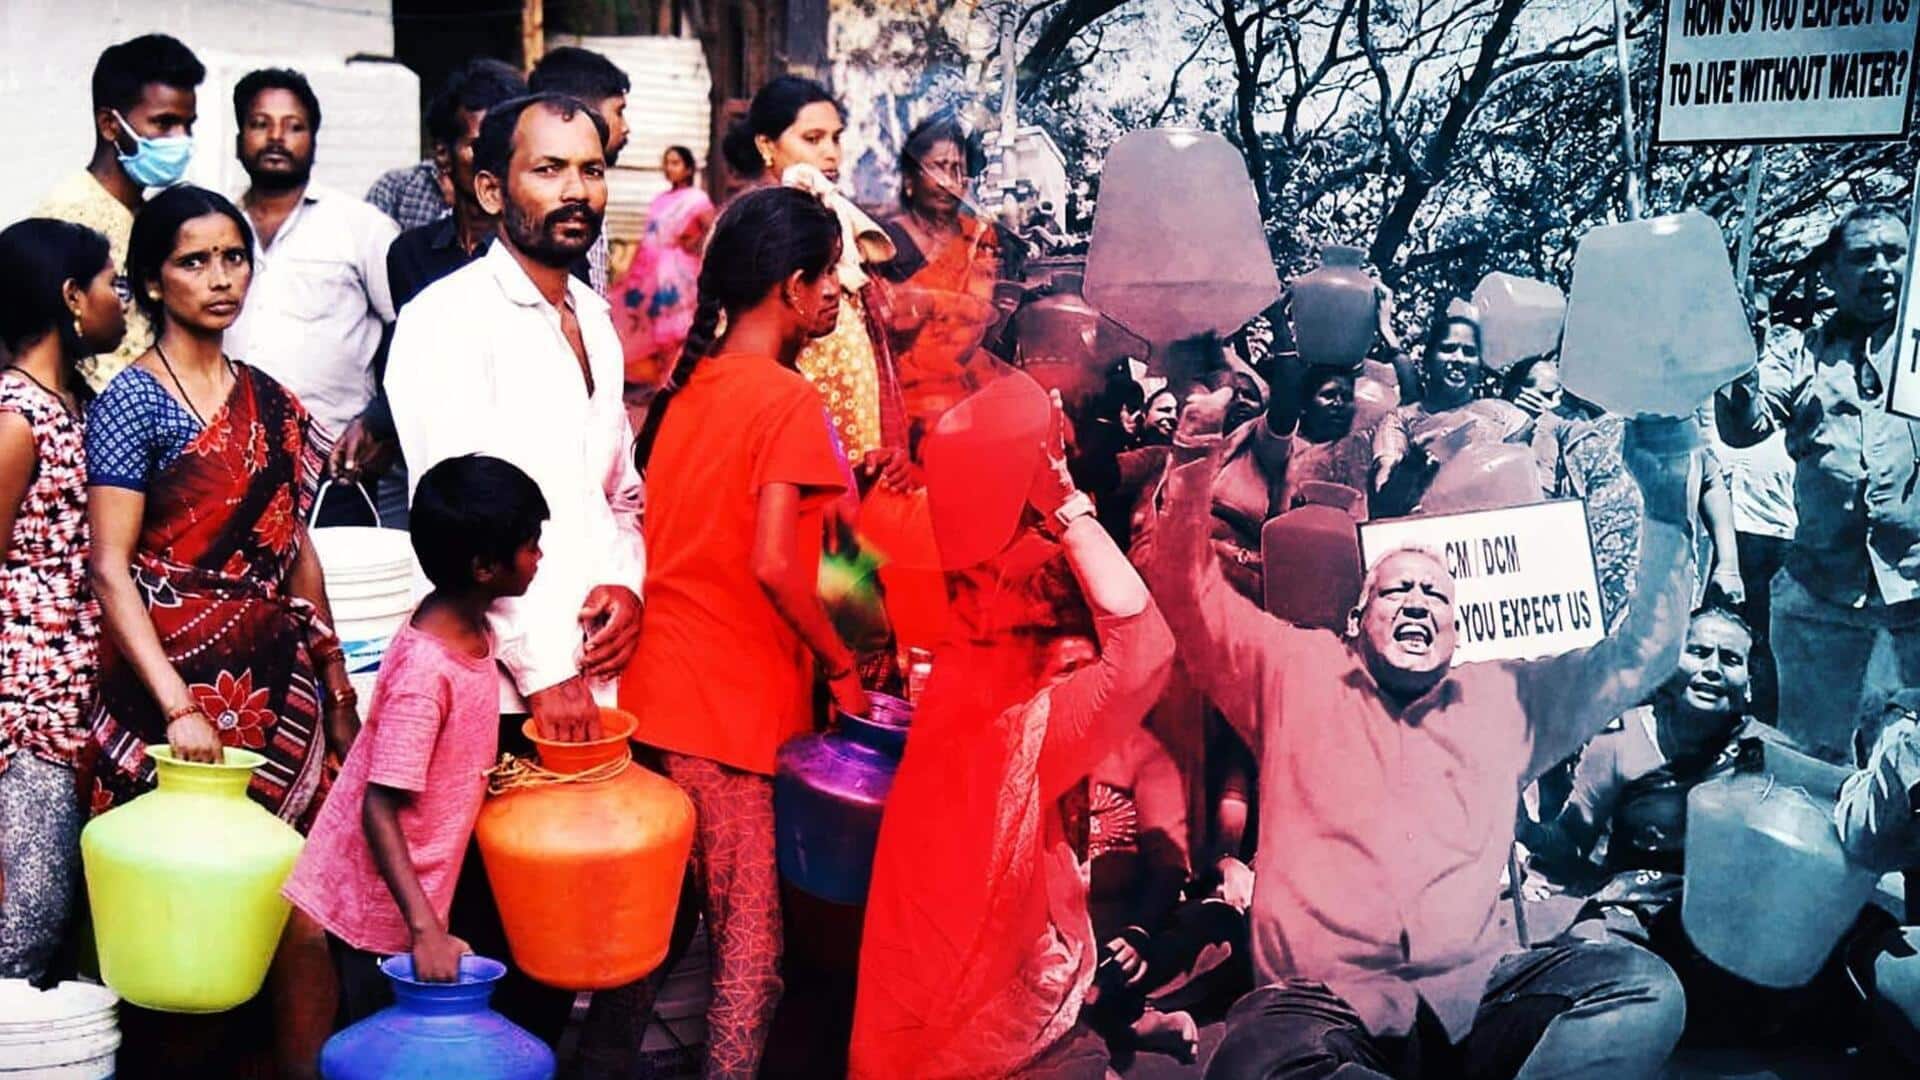 बेंगलुरु: पानी की कमी के साथ अब सताने लगी गर्मी, लोग दिनचर्या बदलने को मजबूर